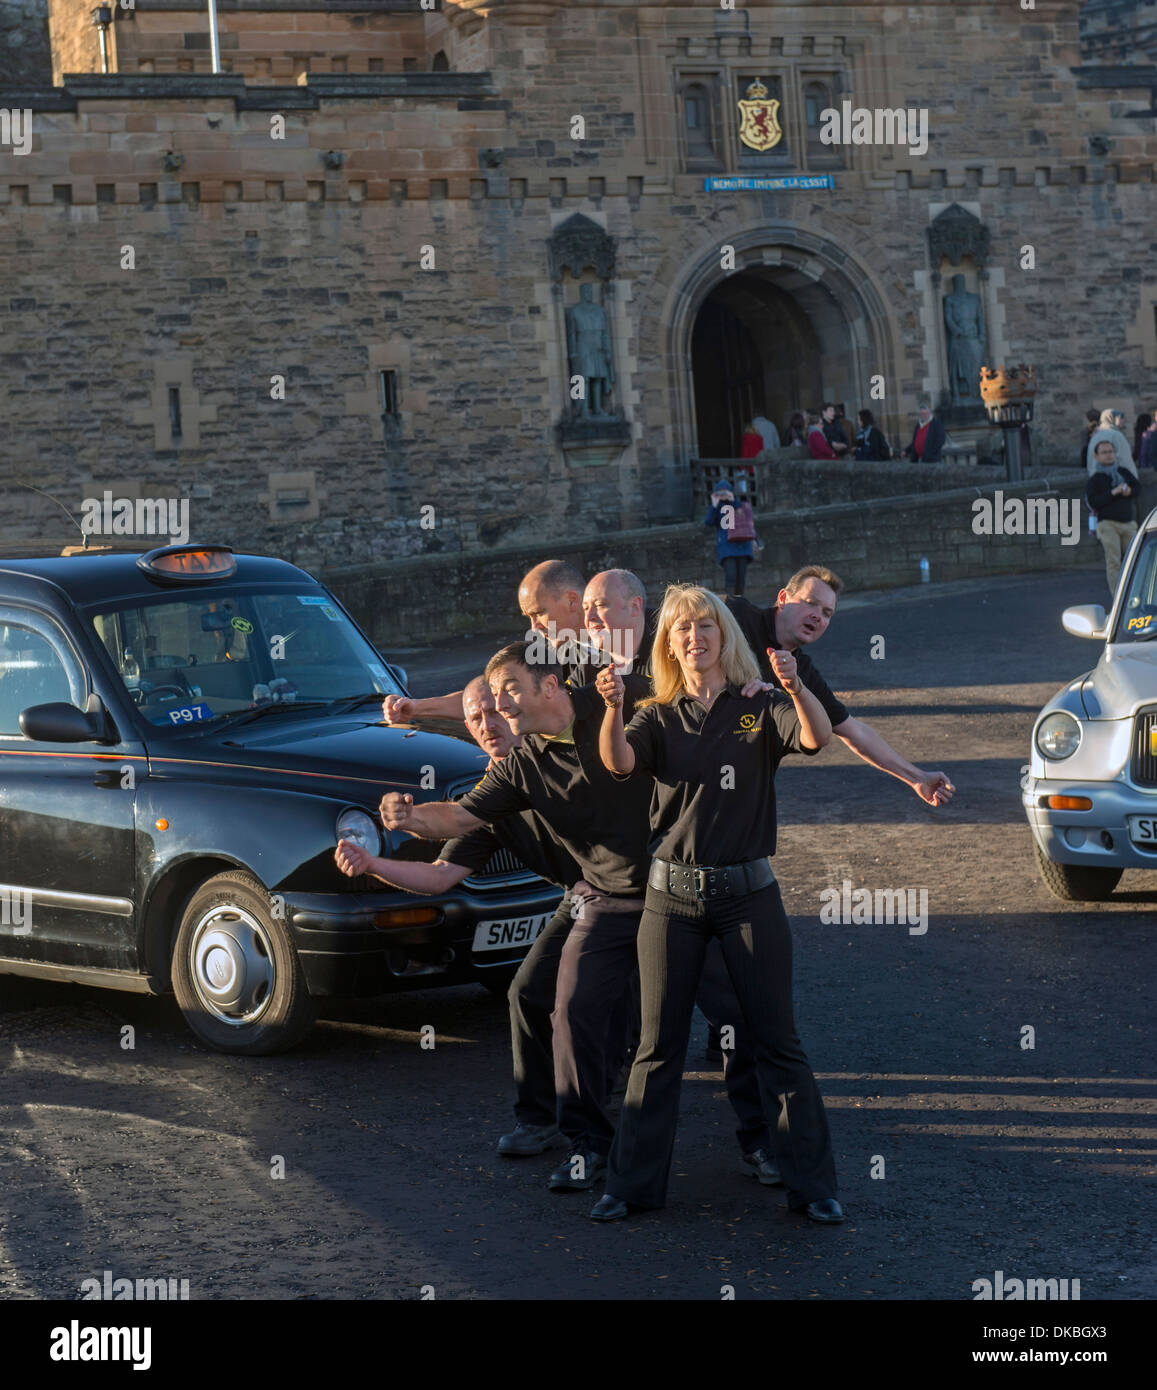 Taxifahrer von der zentrale Taxi-Unternehmen in Edinburgh, Schottland, Tanz für eine Unternehmens-tv-Werbung vor dem Schloss. Stockfoto